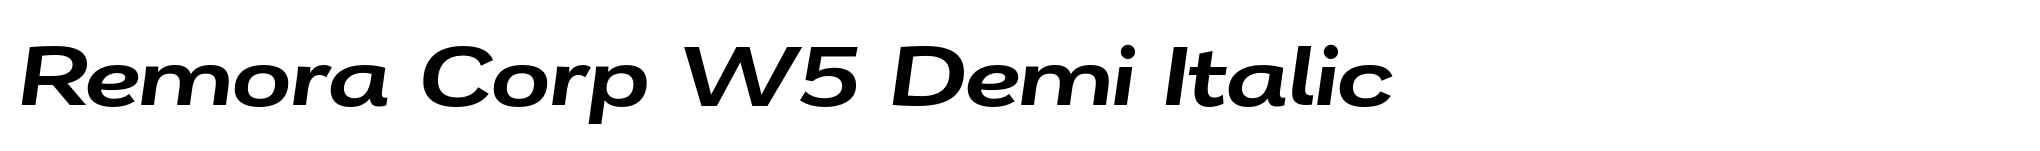 Remora Corp W5 Demi Italic image